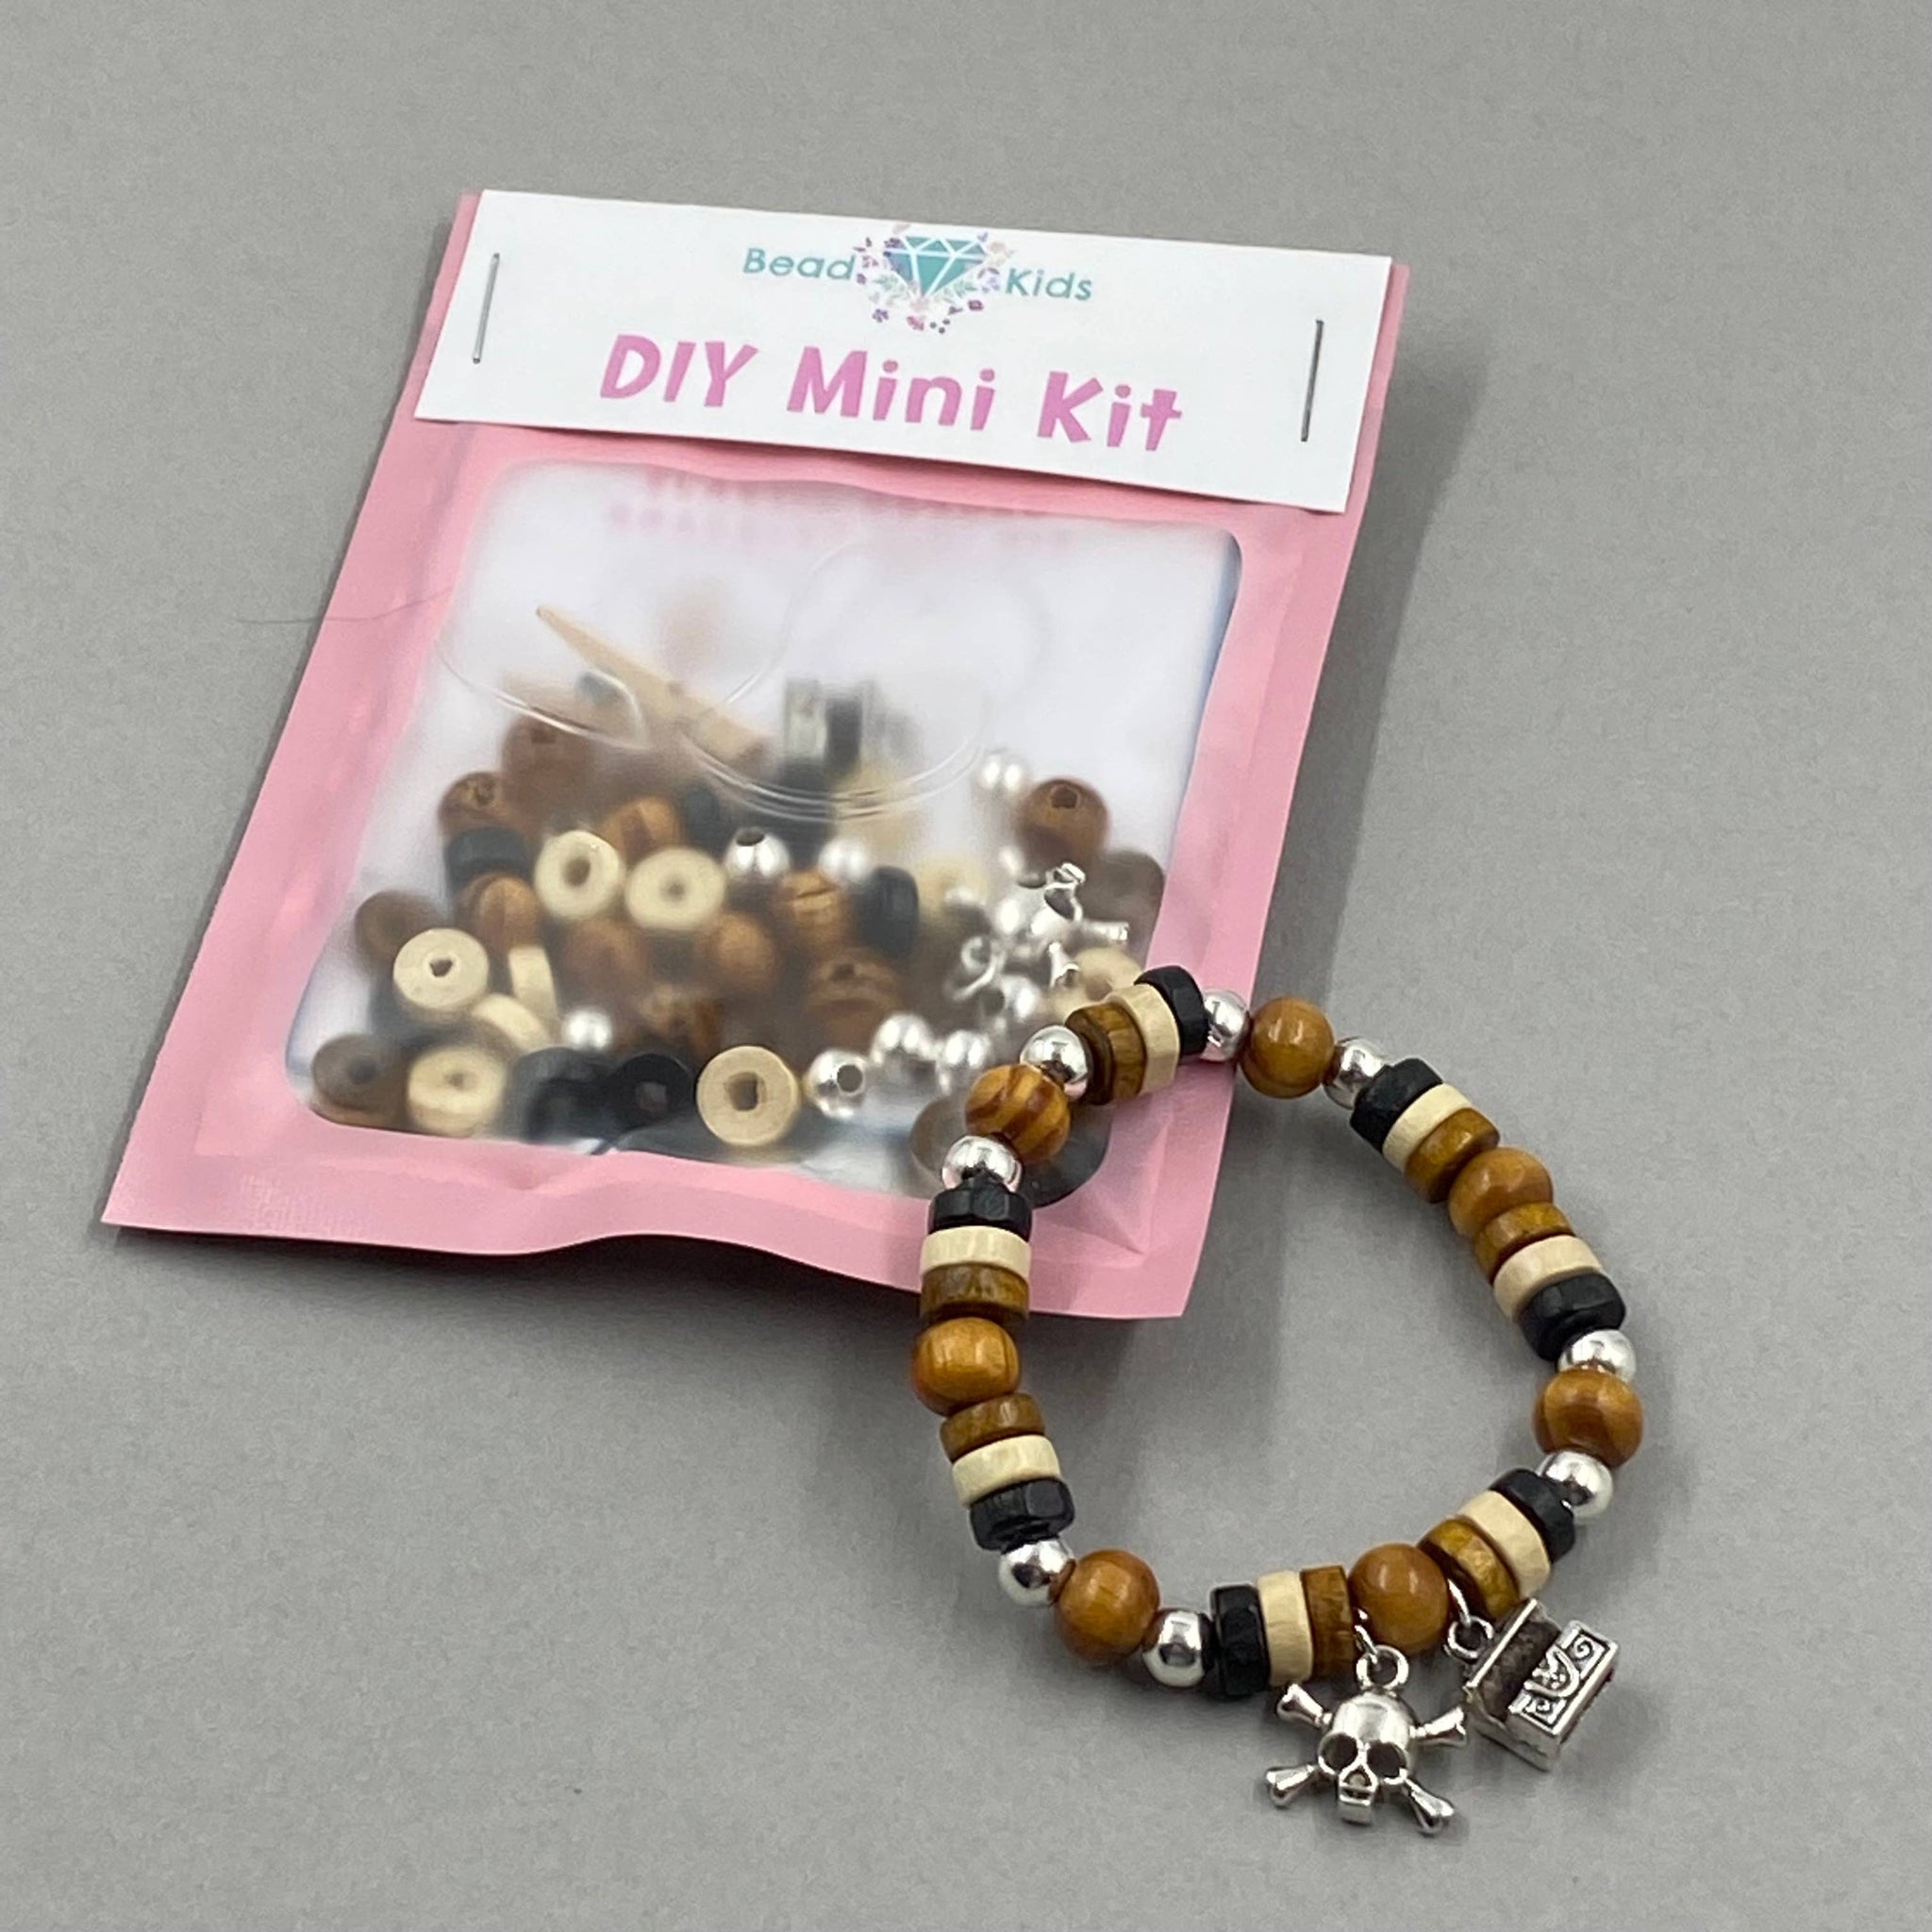 Pirate Elastic Bracelet Mini Kit for Children